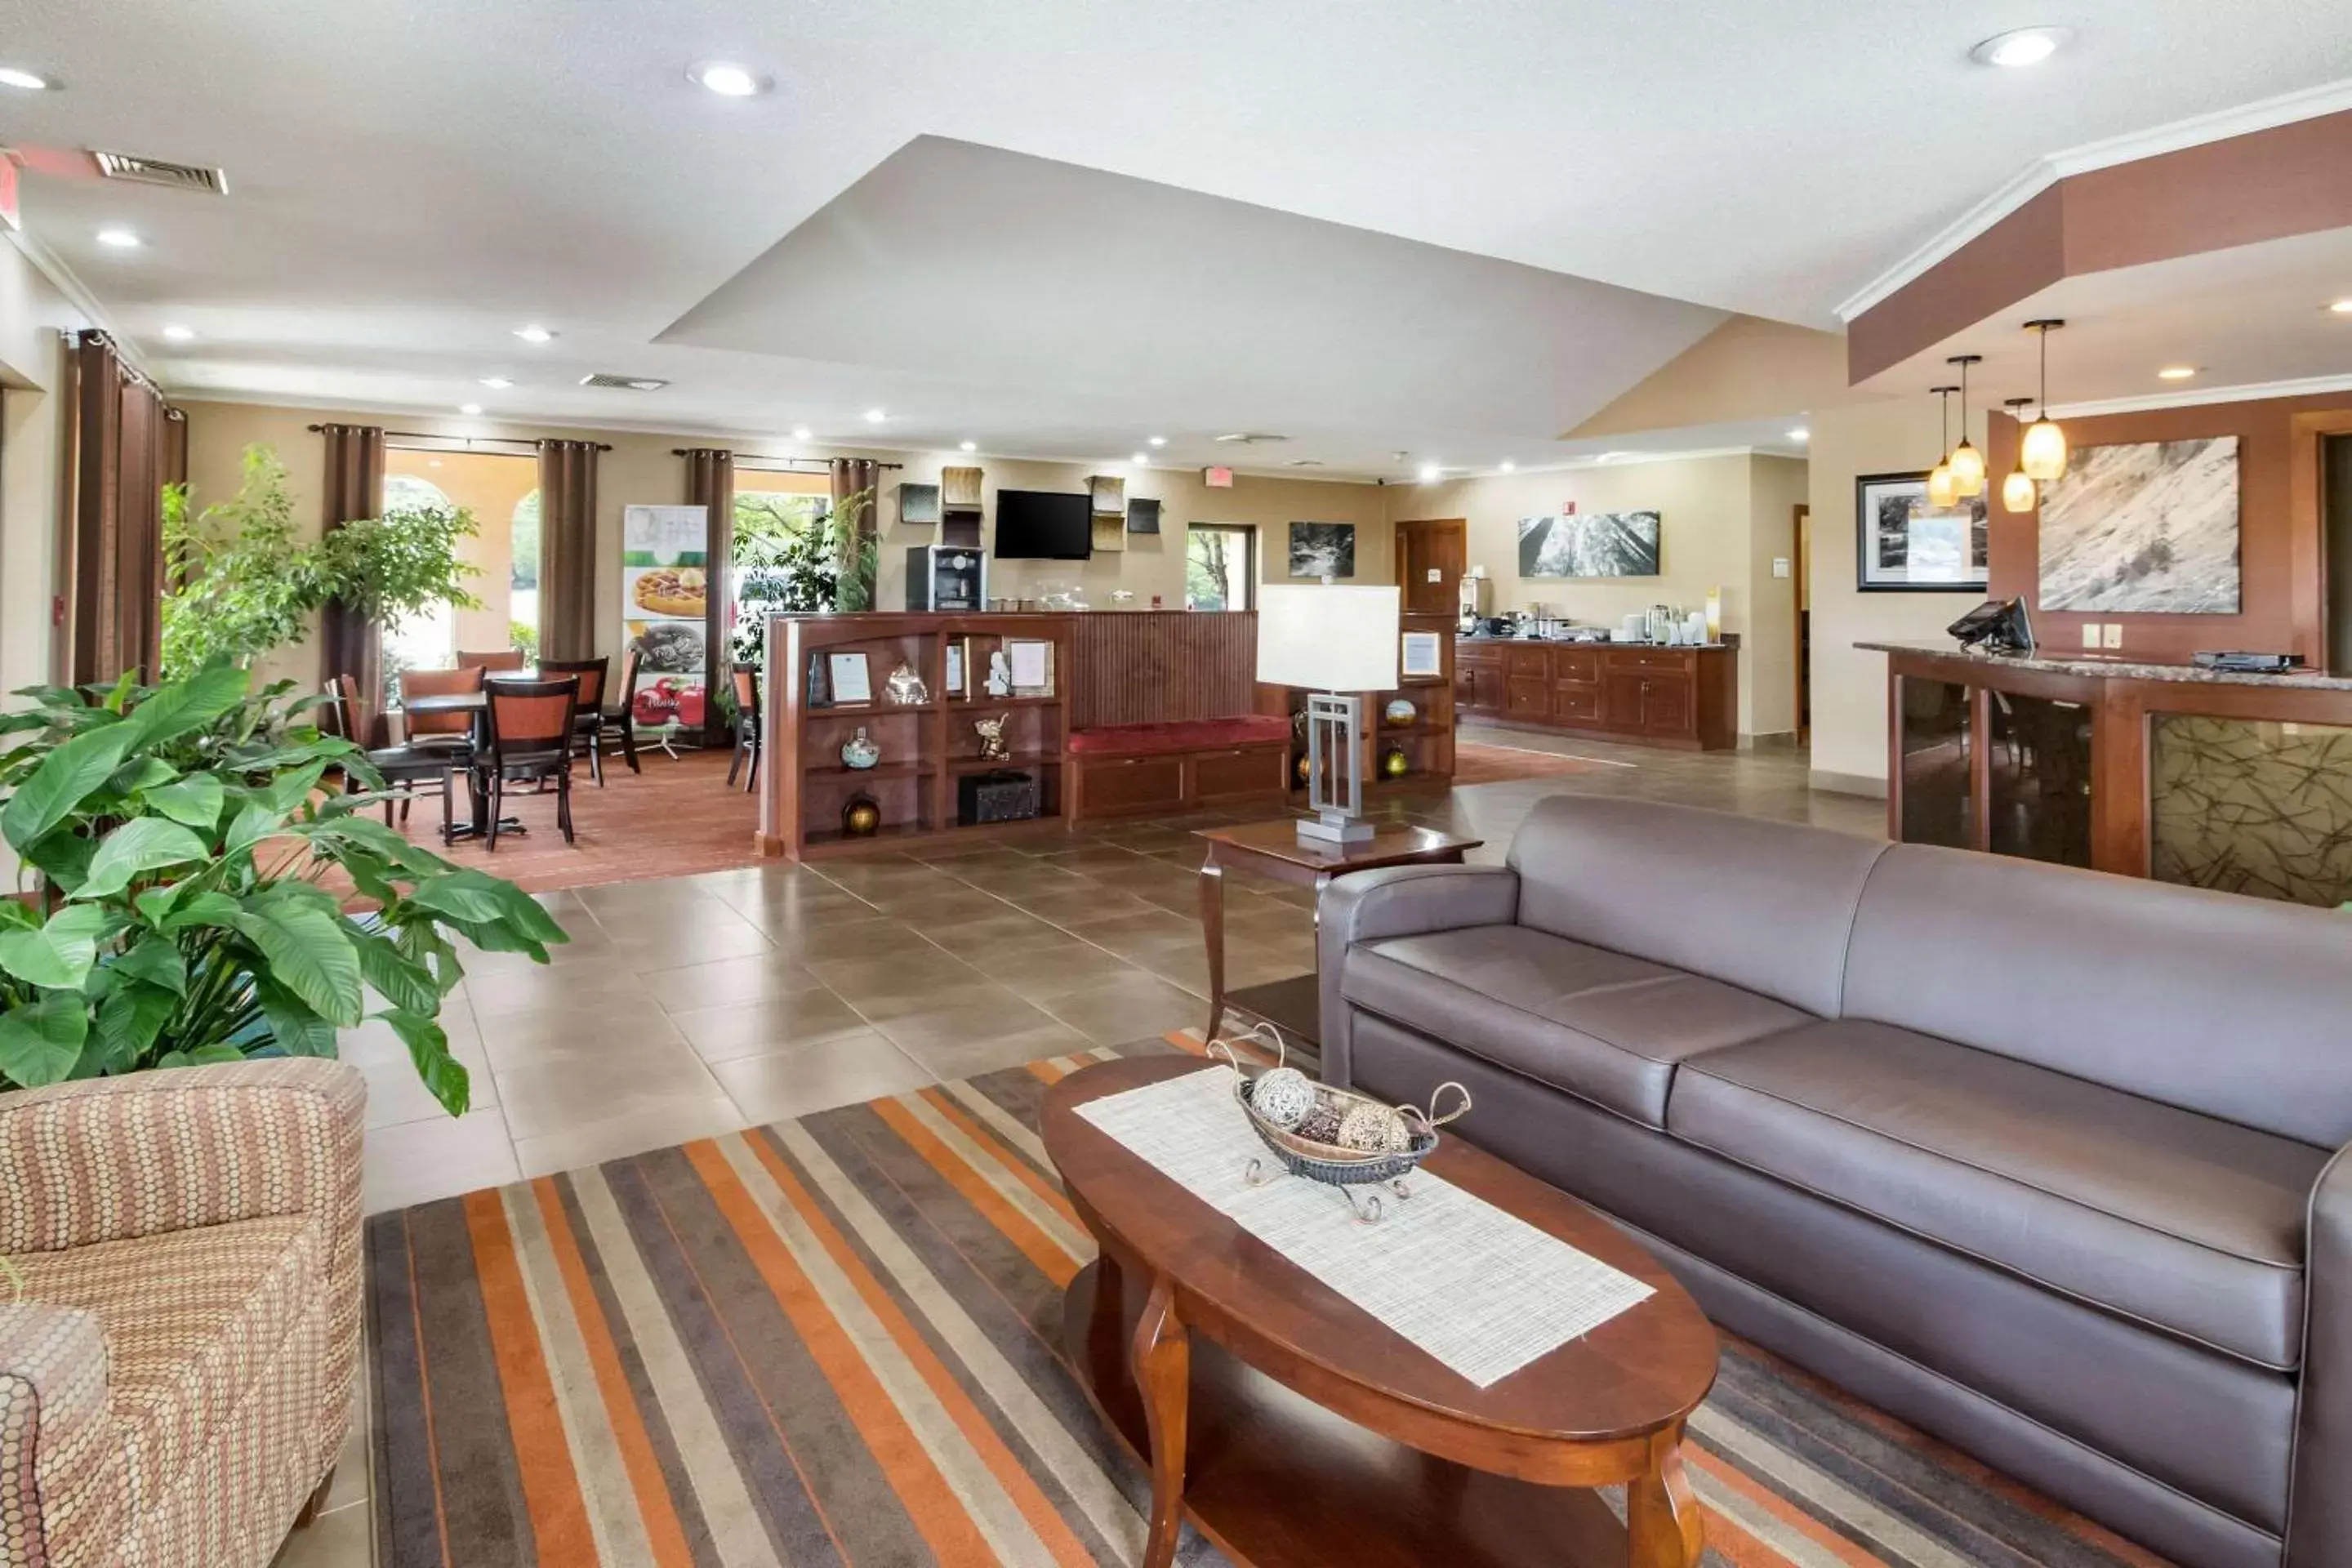 Lobby or reception, Lobby/Reception in Quality Inn Dandridge